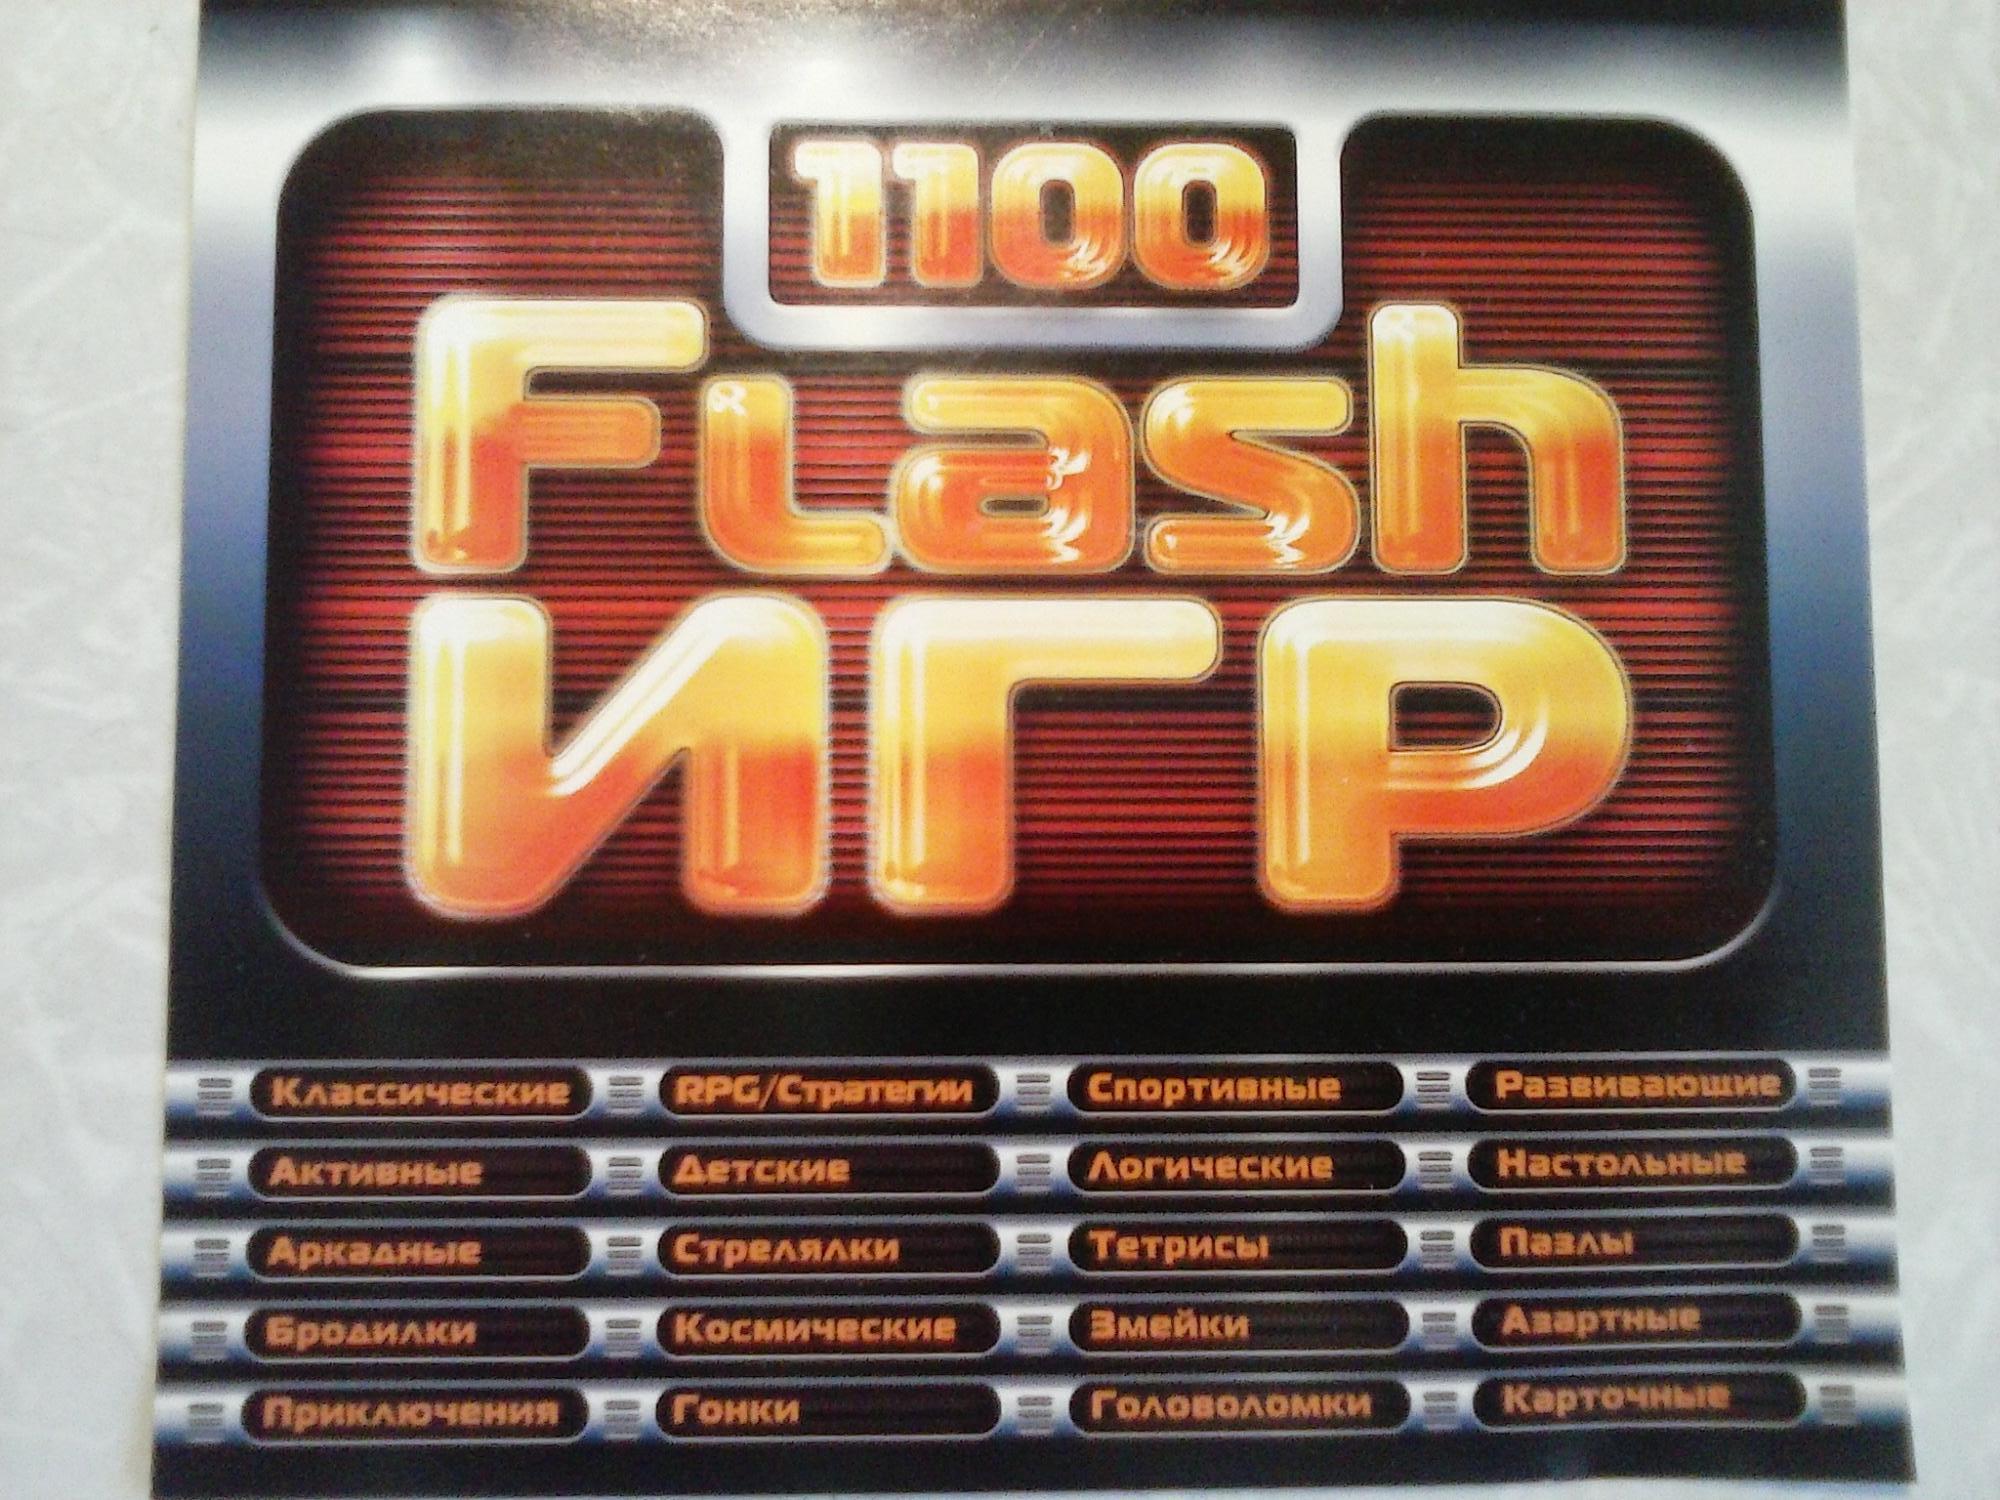 1000 лучших игр. 1100 Flash игр. Диск 1100 флеш игр. Сборник Flash игр. 1100 Флеш игр 2006.